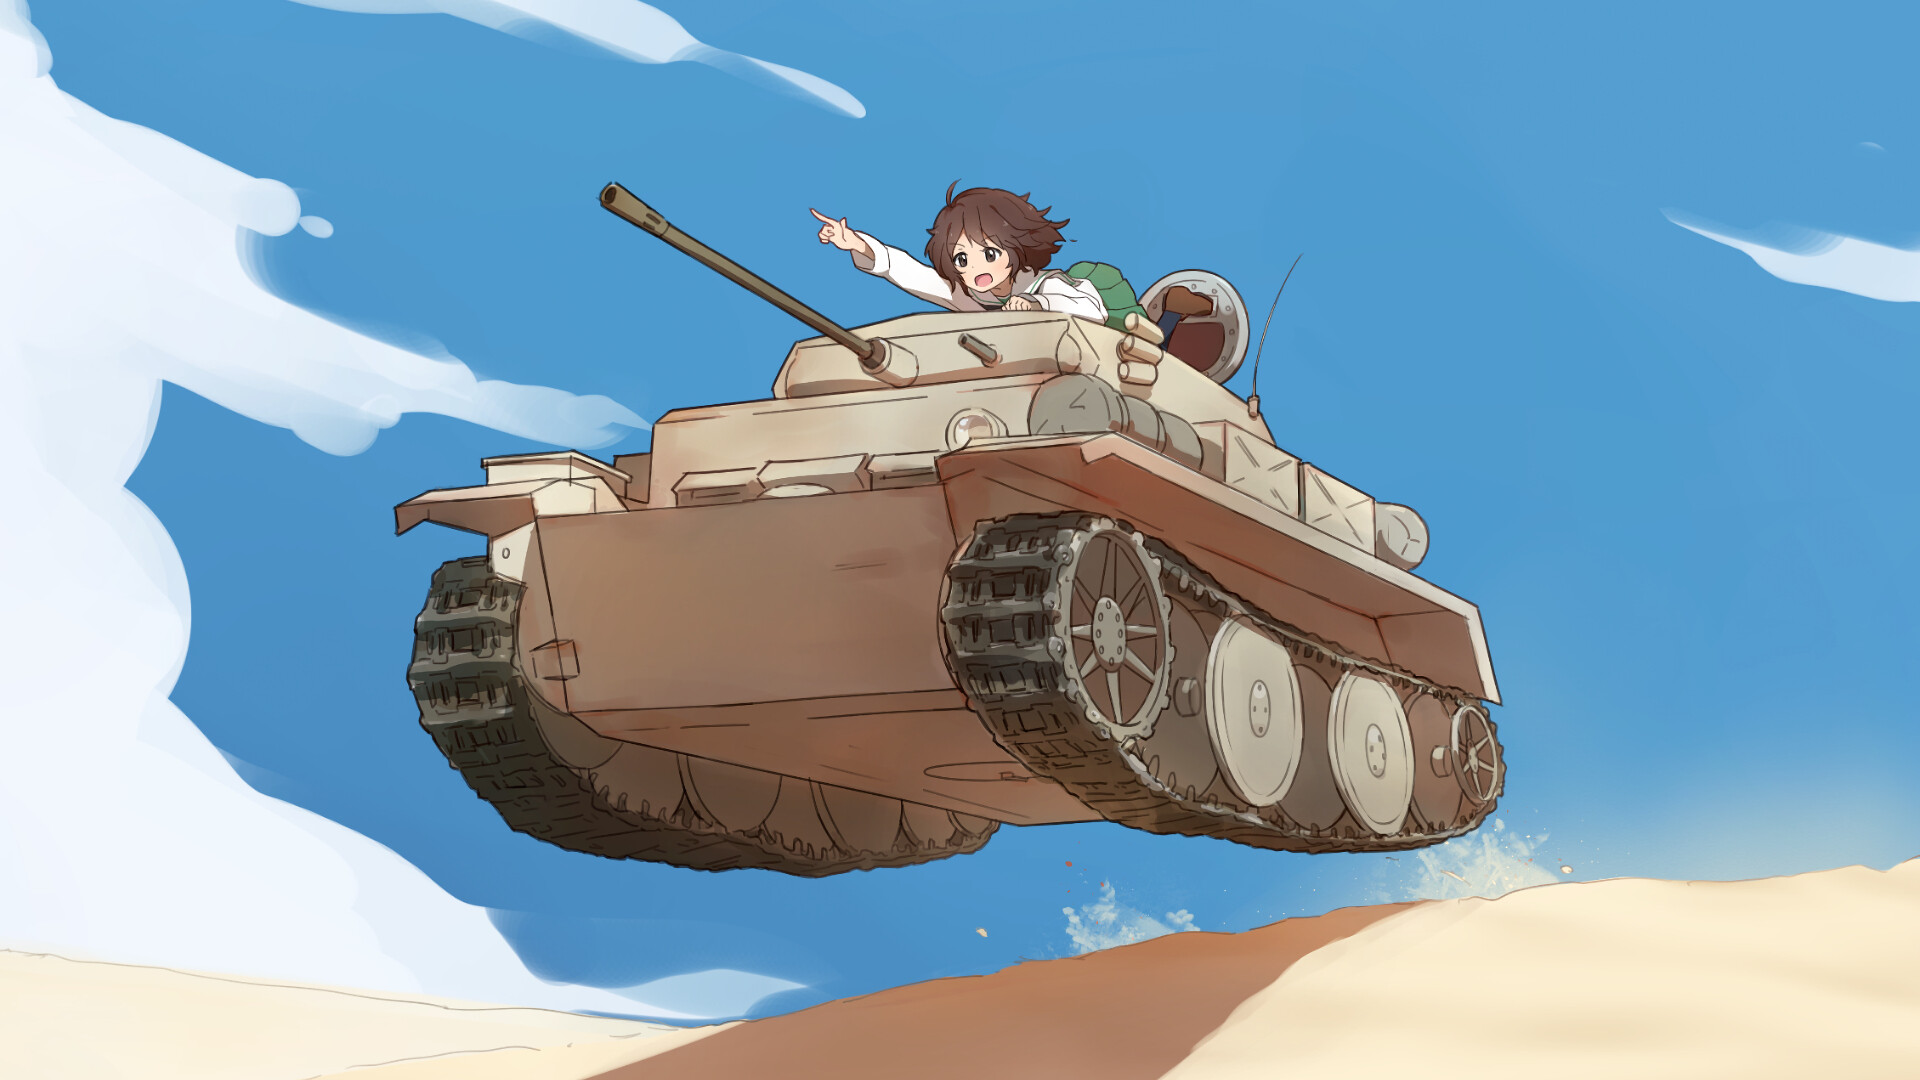 Girls und Panzer: A girl operating the tank, The desert battlefield, Sensha-do, The art of tank warfare. 1920x1080 Full HD Background.